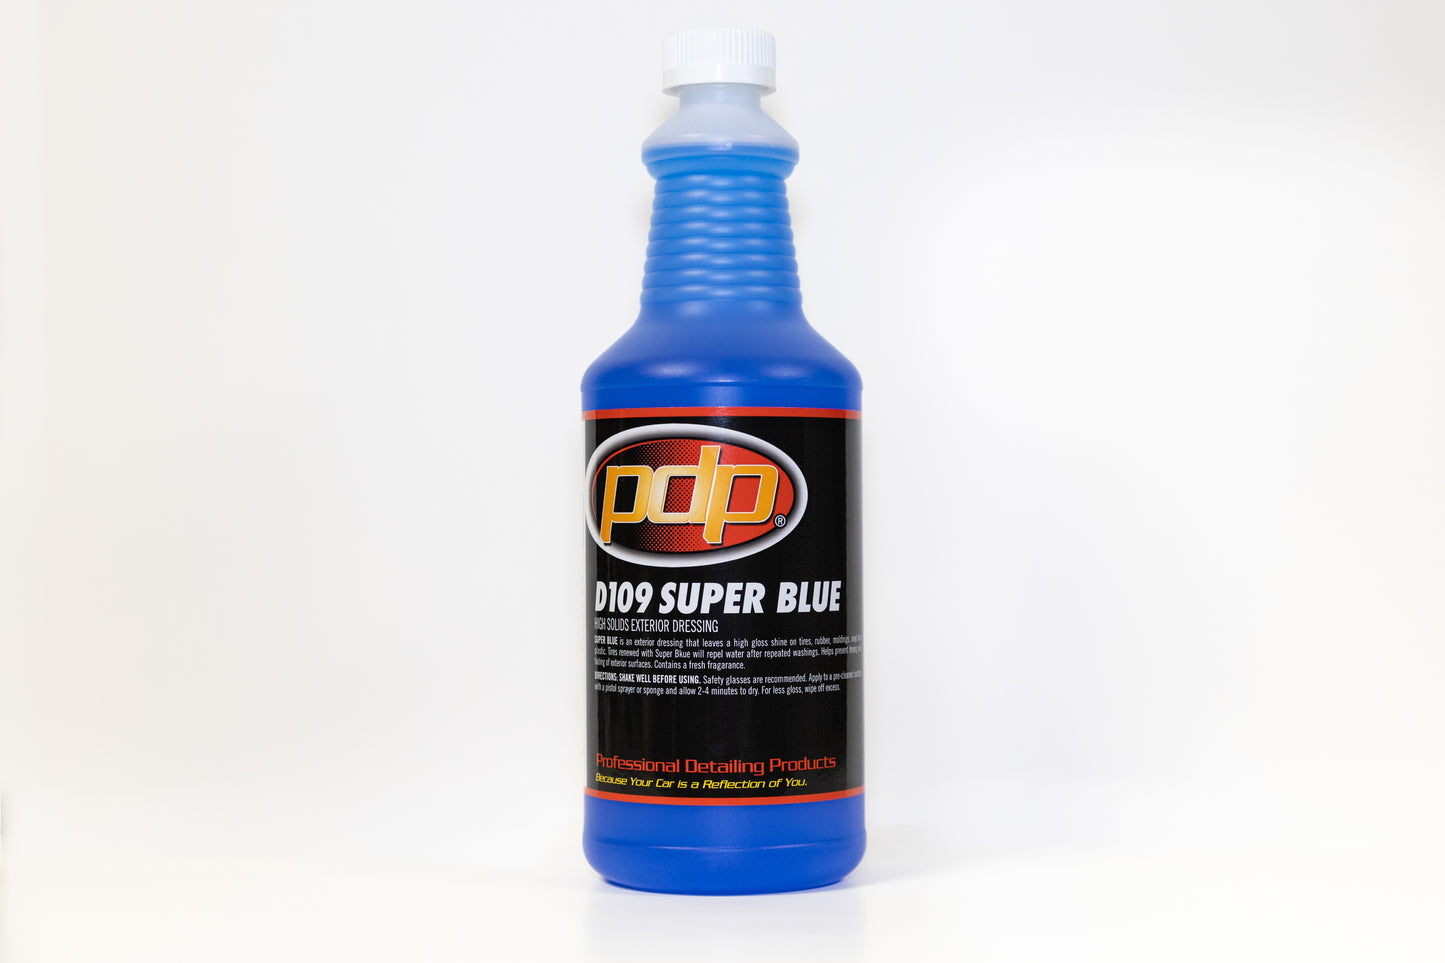 D109 Super Blue Tire Shine